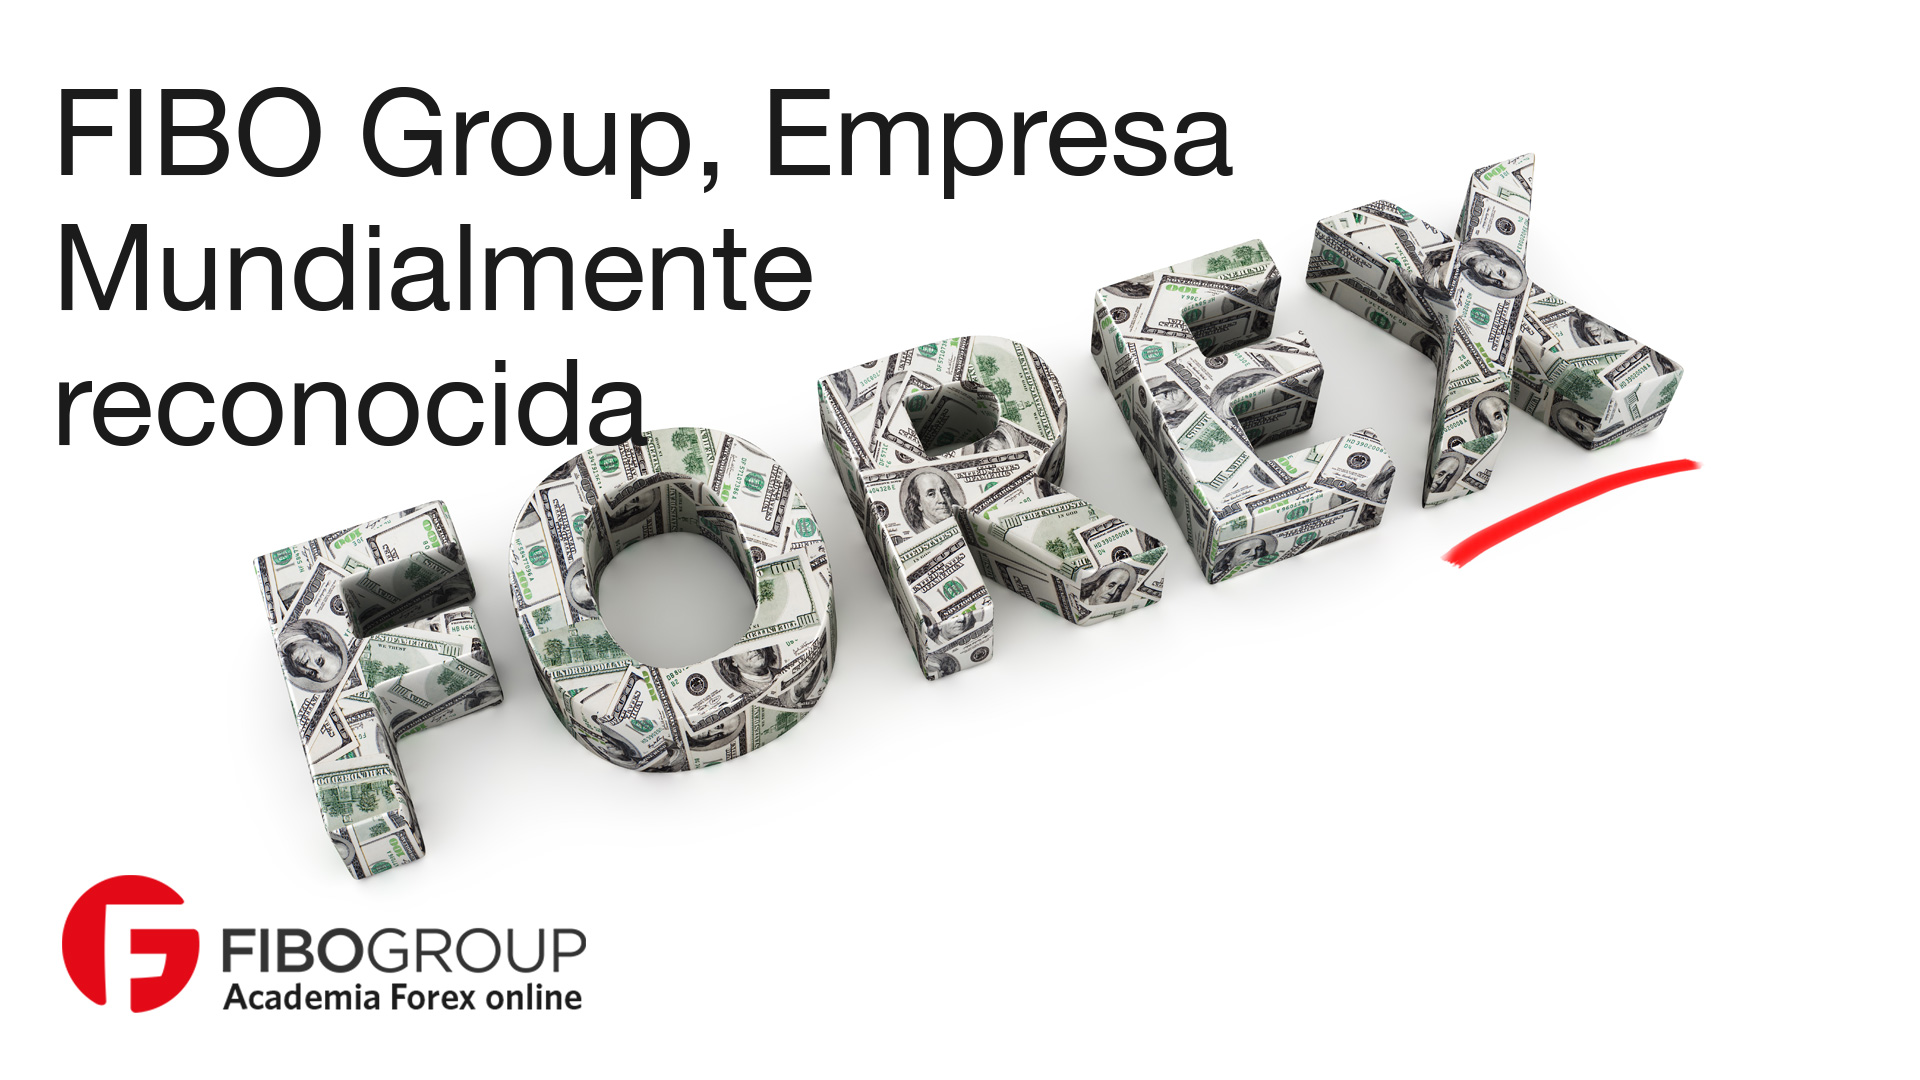 FIBO Group, Empresa Mundialmente reconocida.